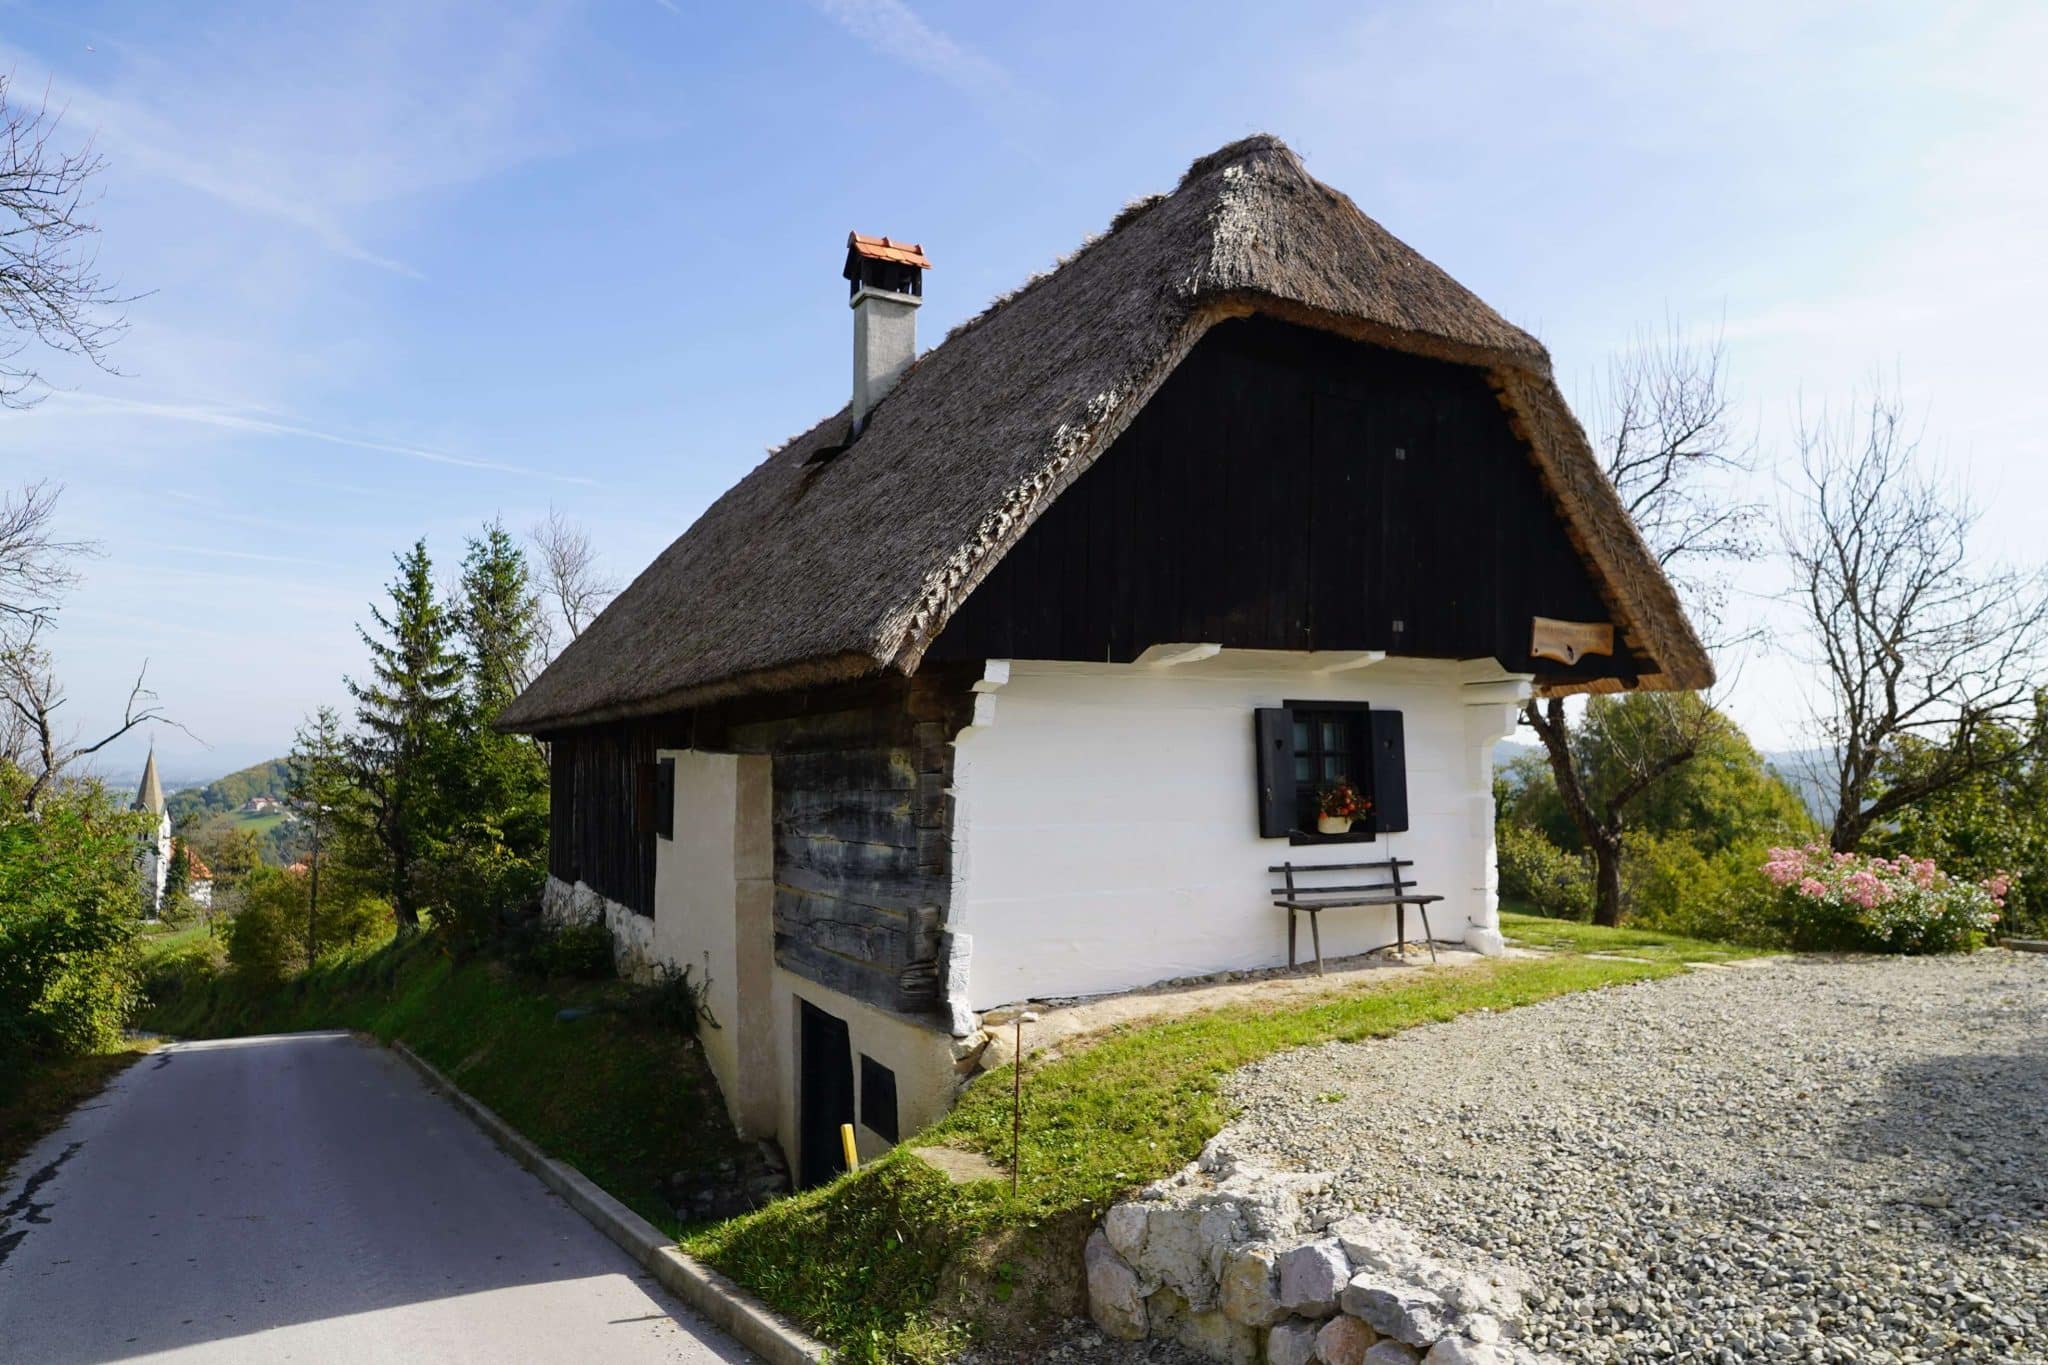 Franckina hiša: najstarejša hiša na Kozjanskem